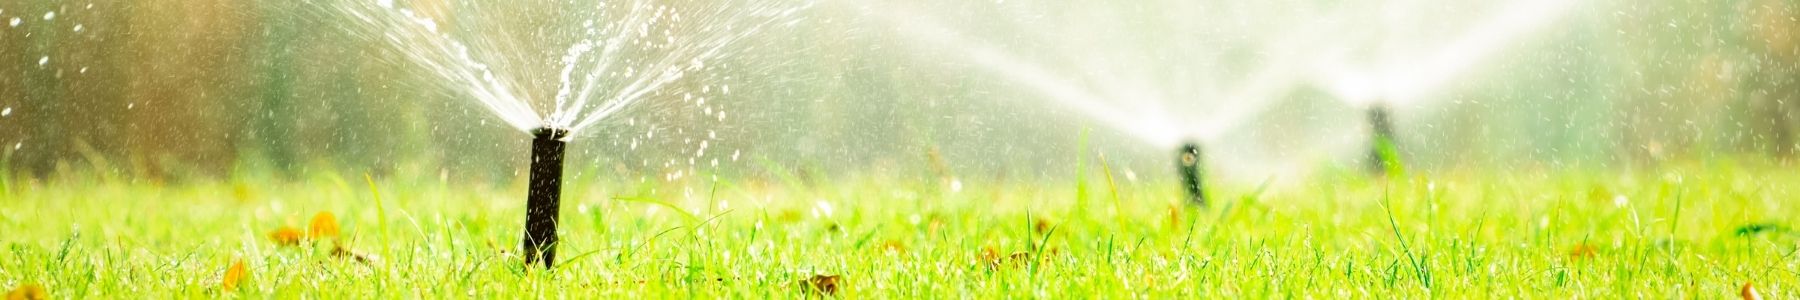 Sprinklers, Pop Ups and Drip Irrigation